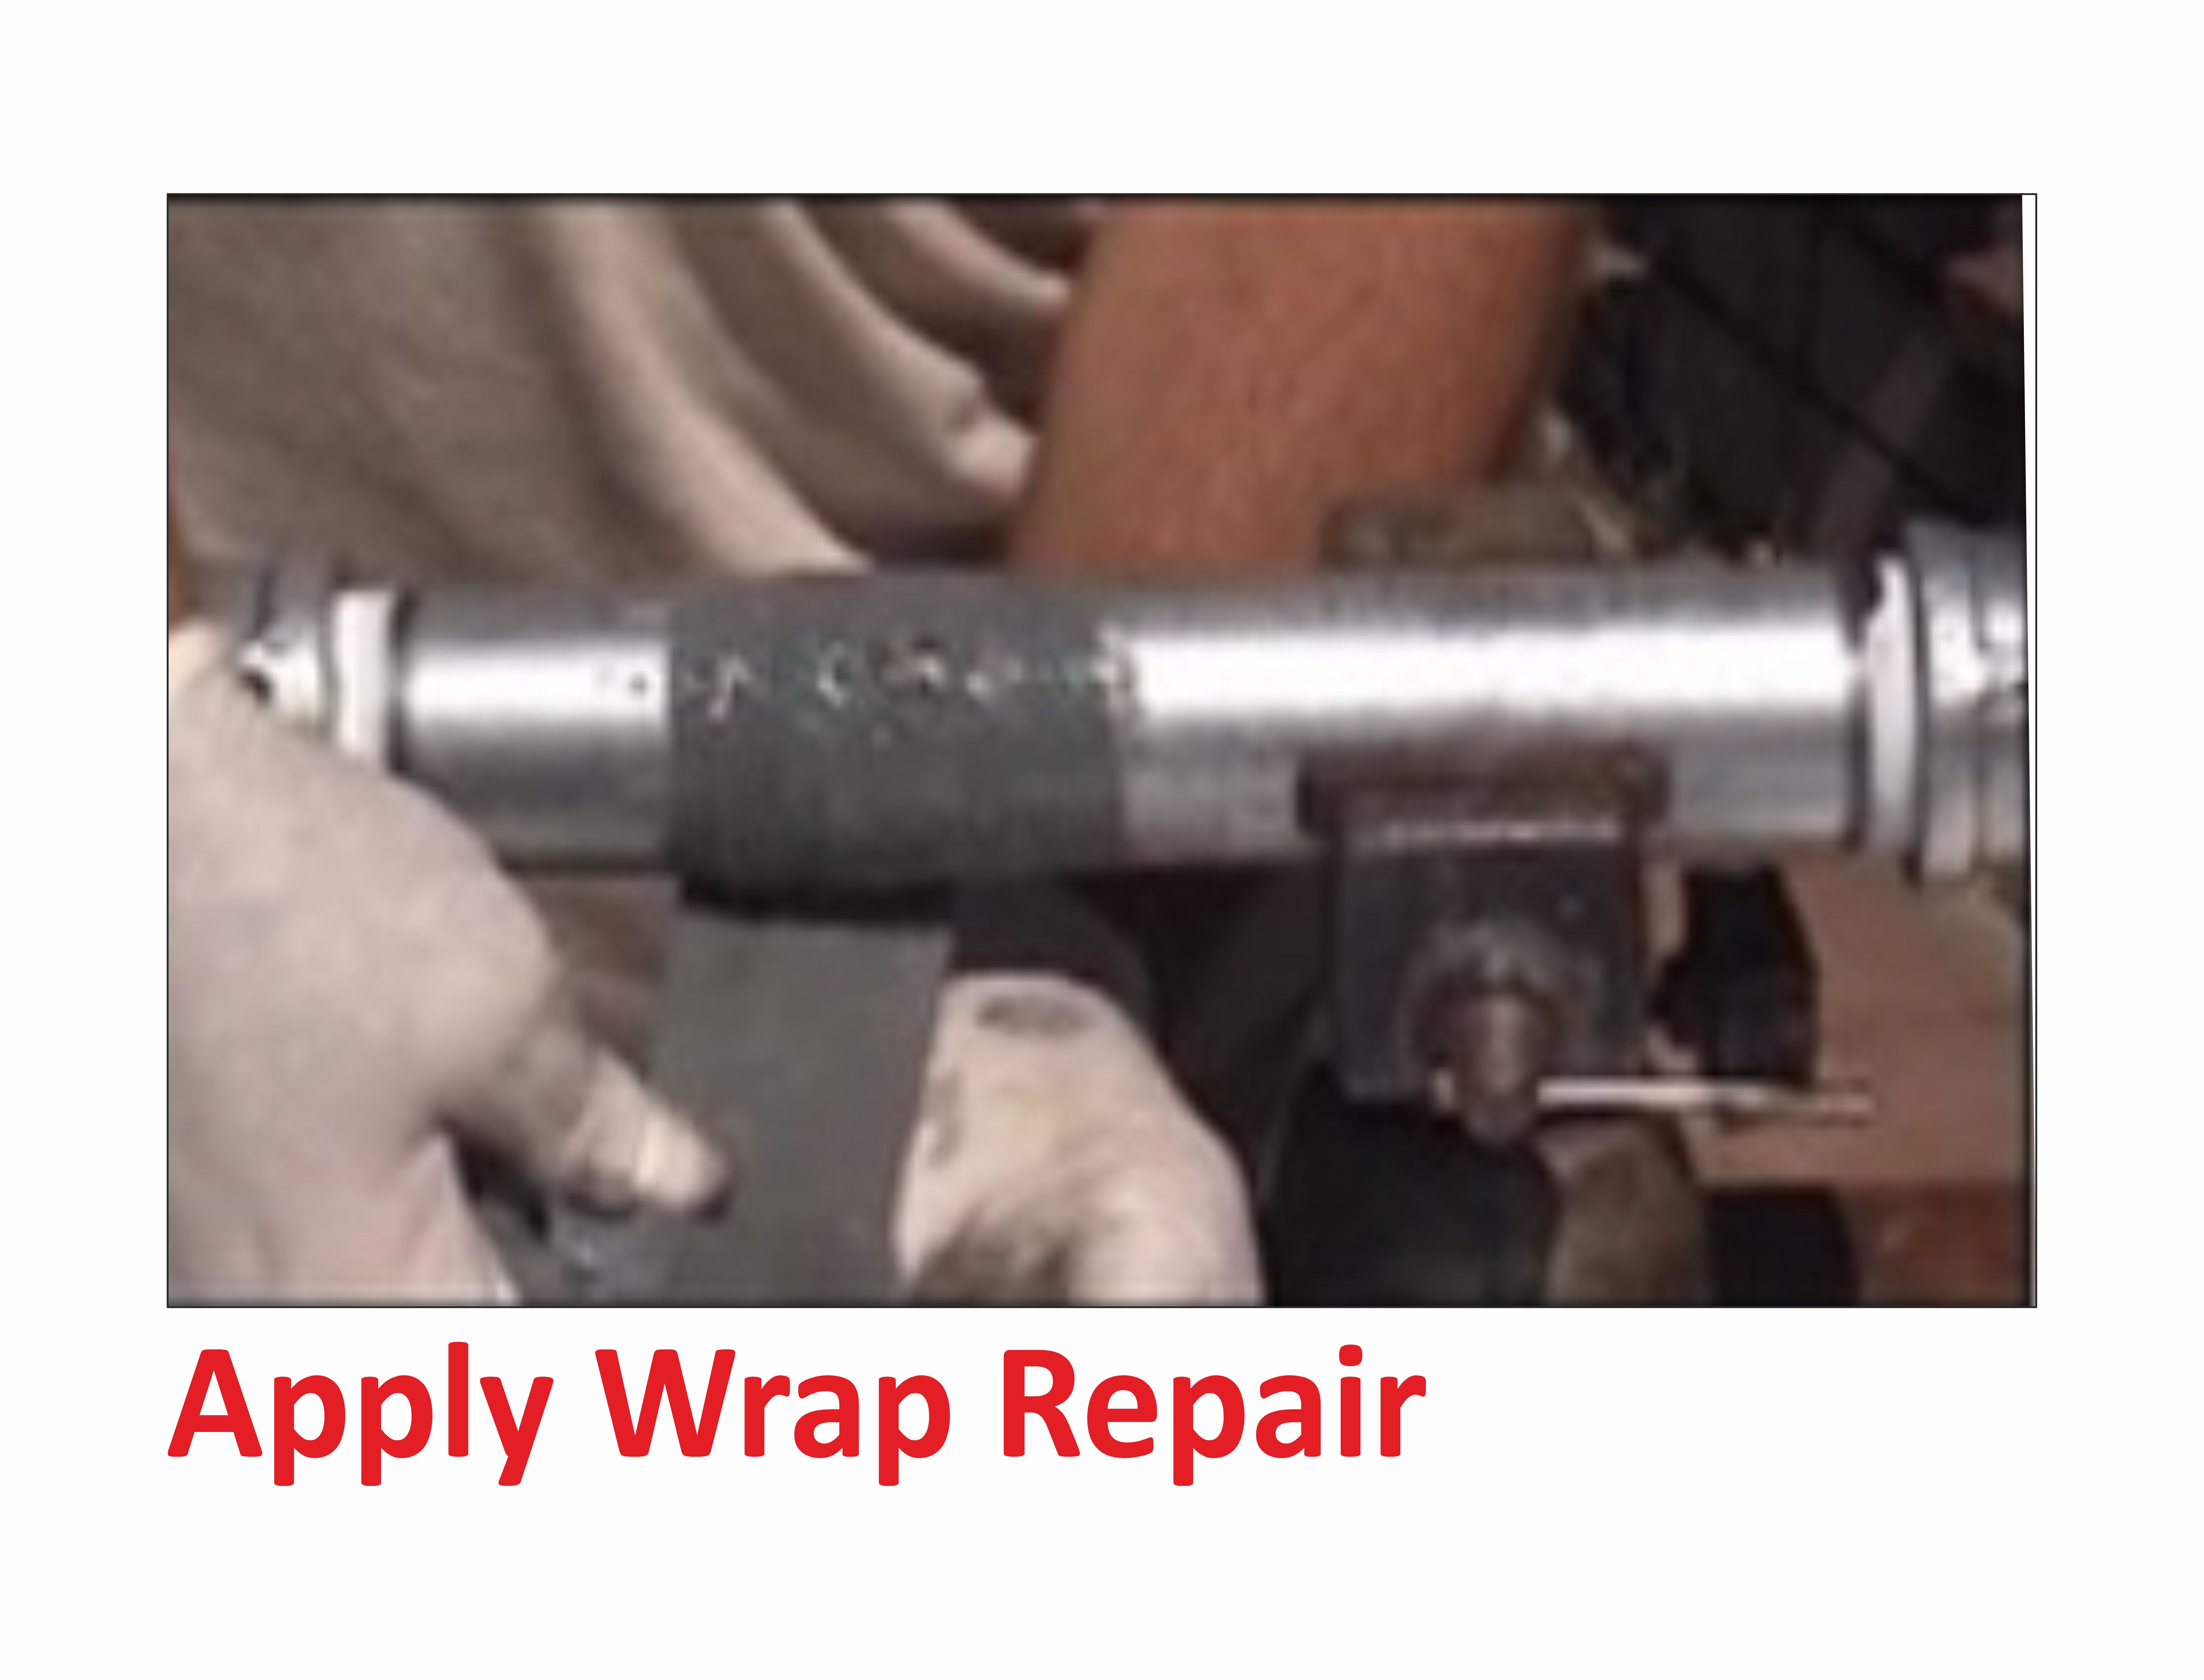 Zero Leak Pipe Repair kit 50mm wide x 1.5m long